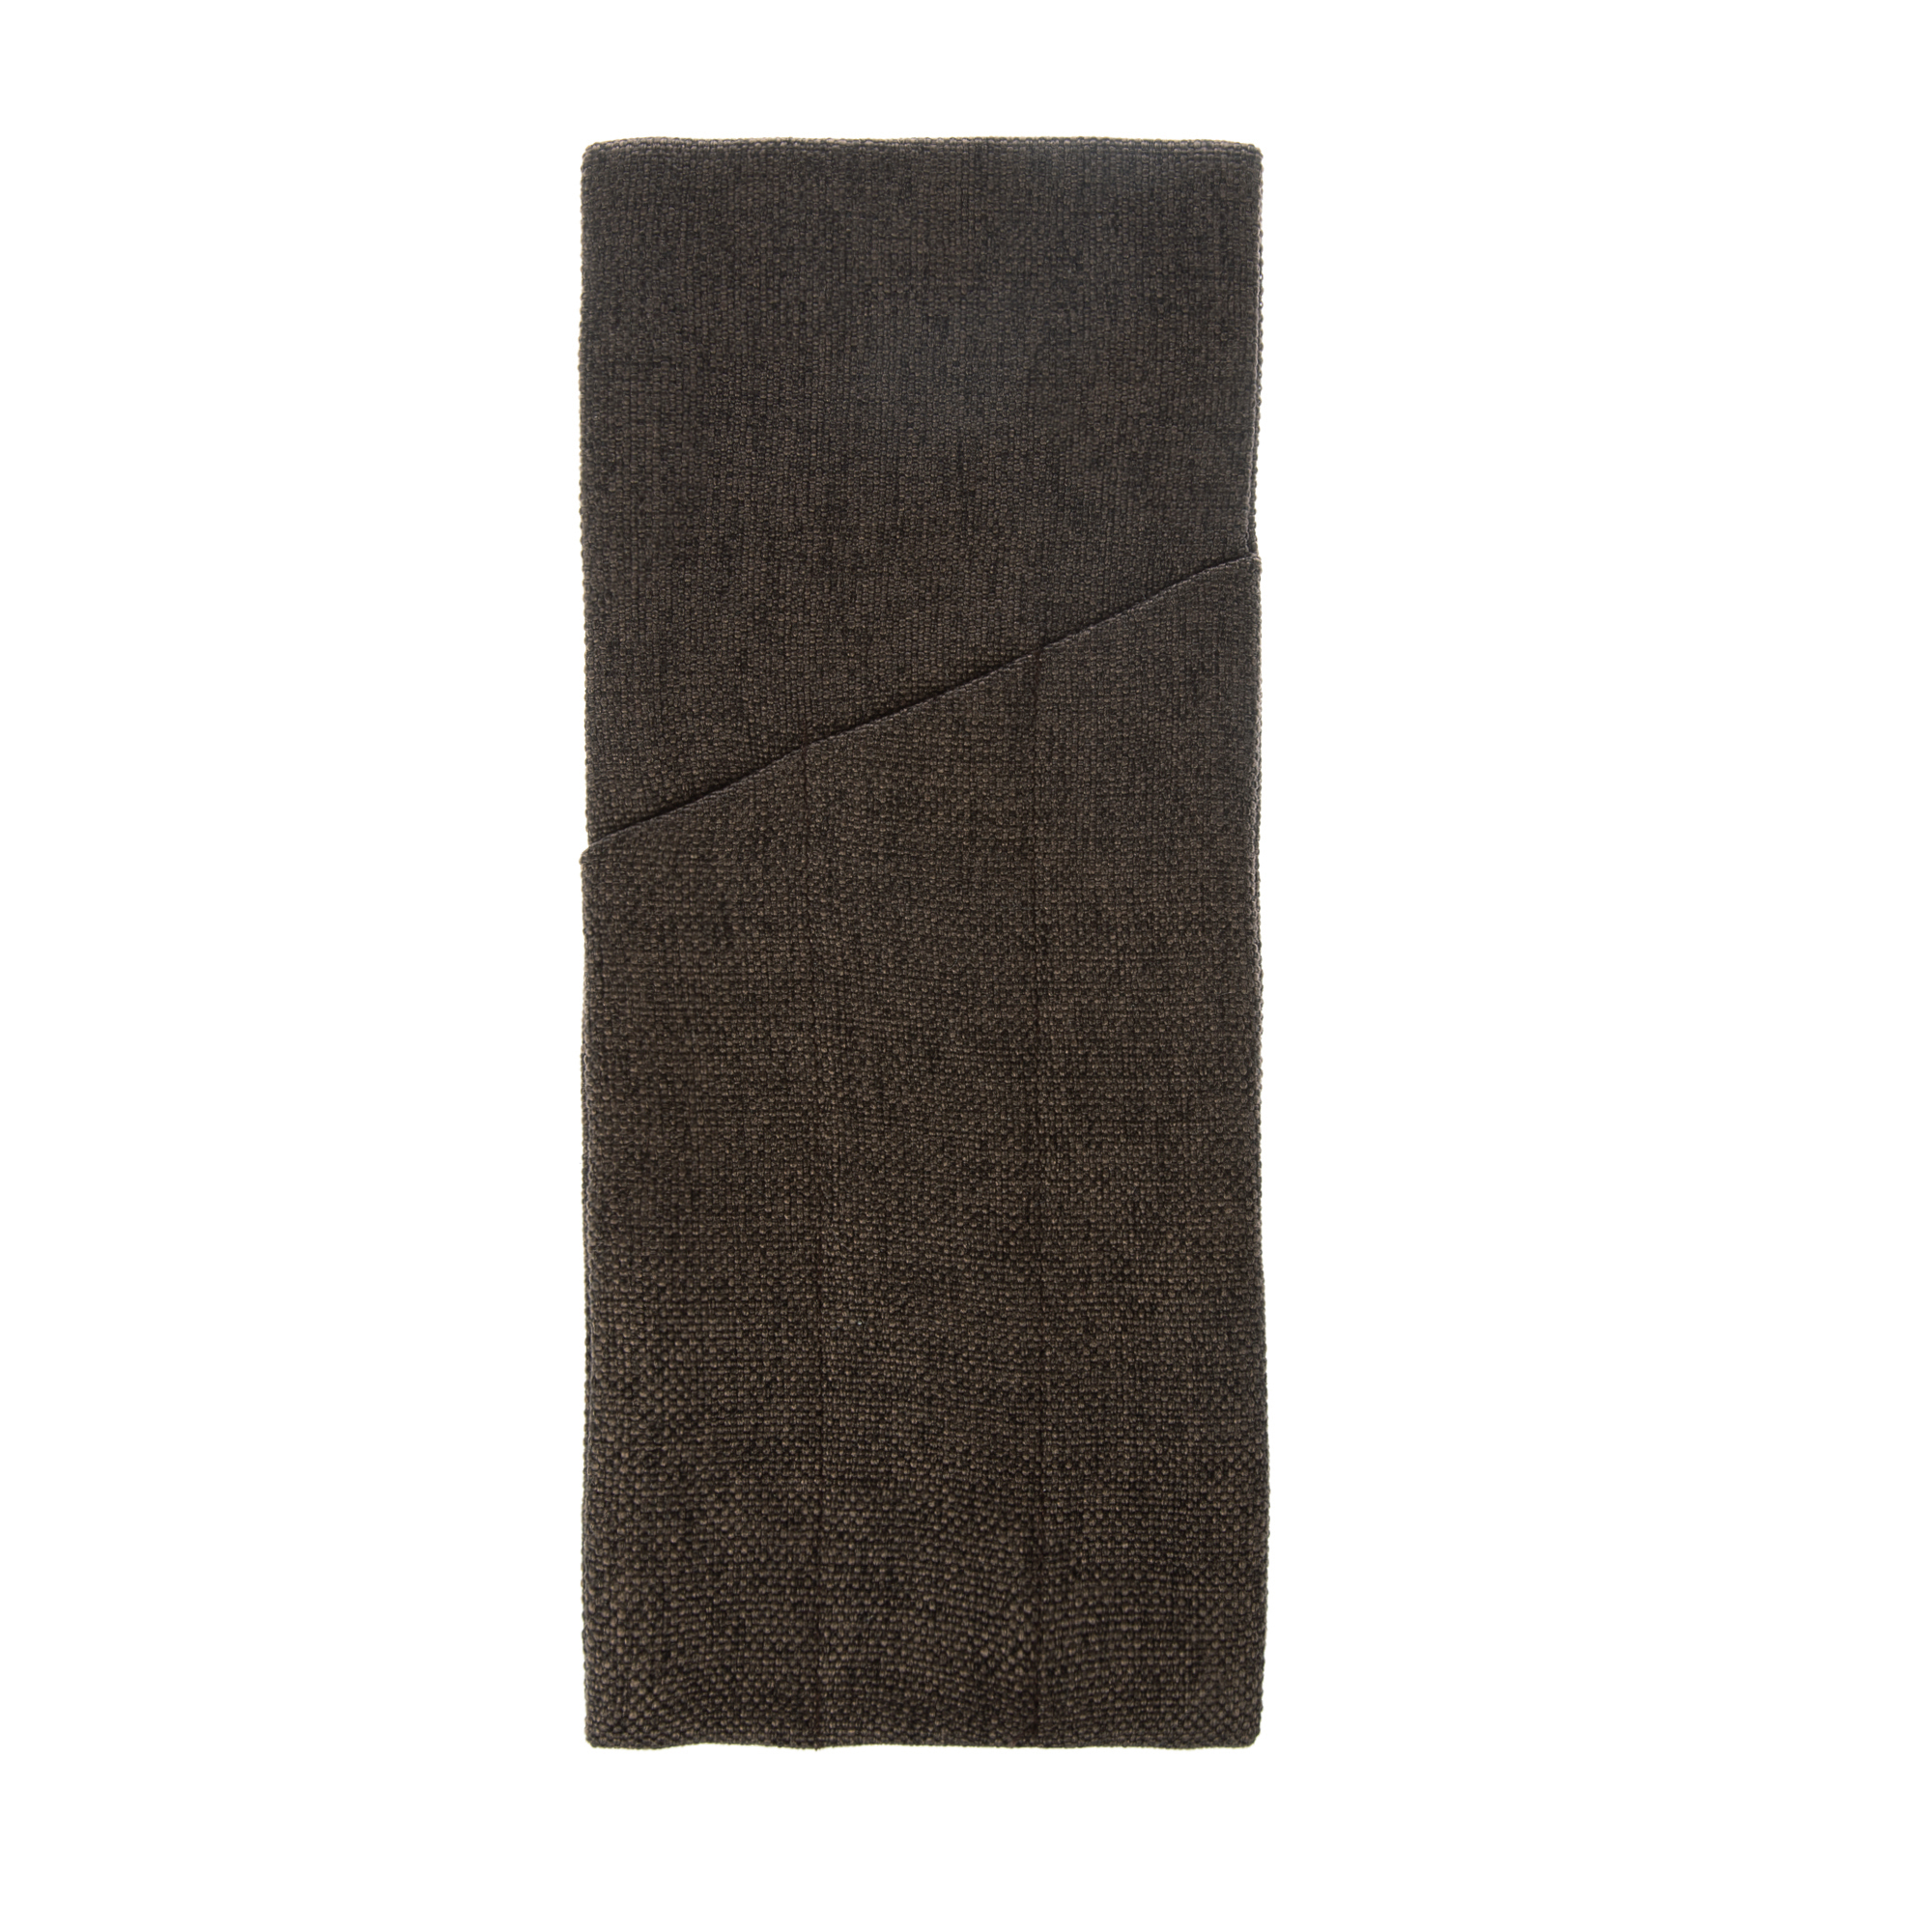 Куверт рогожка коричневый-темный на 3 столовых прибора правый (цвет 55) 5 шт./в уп.